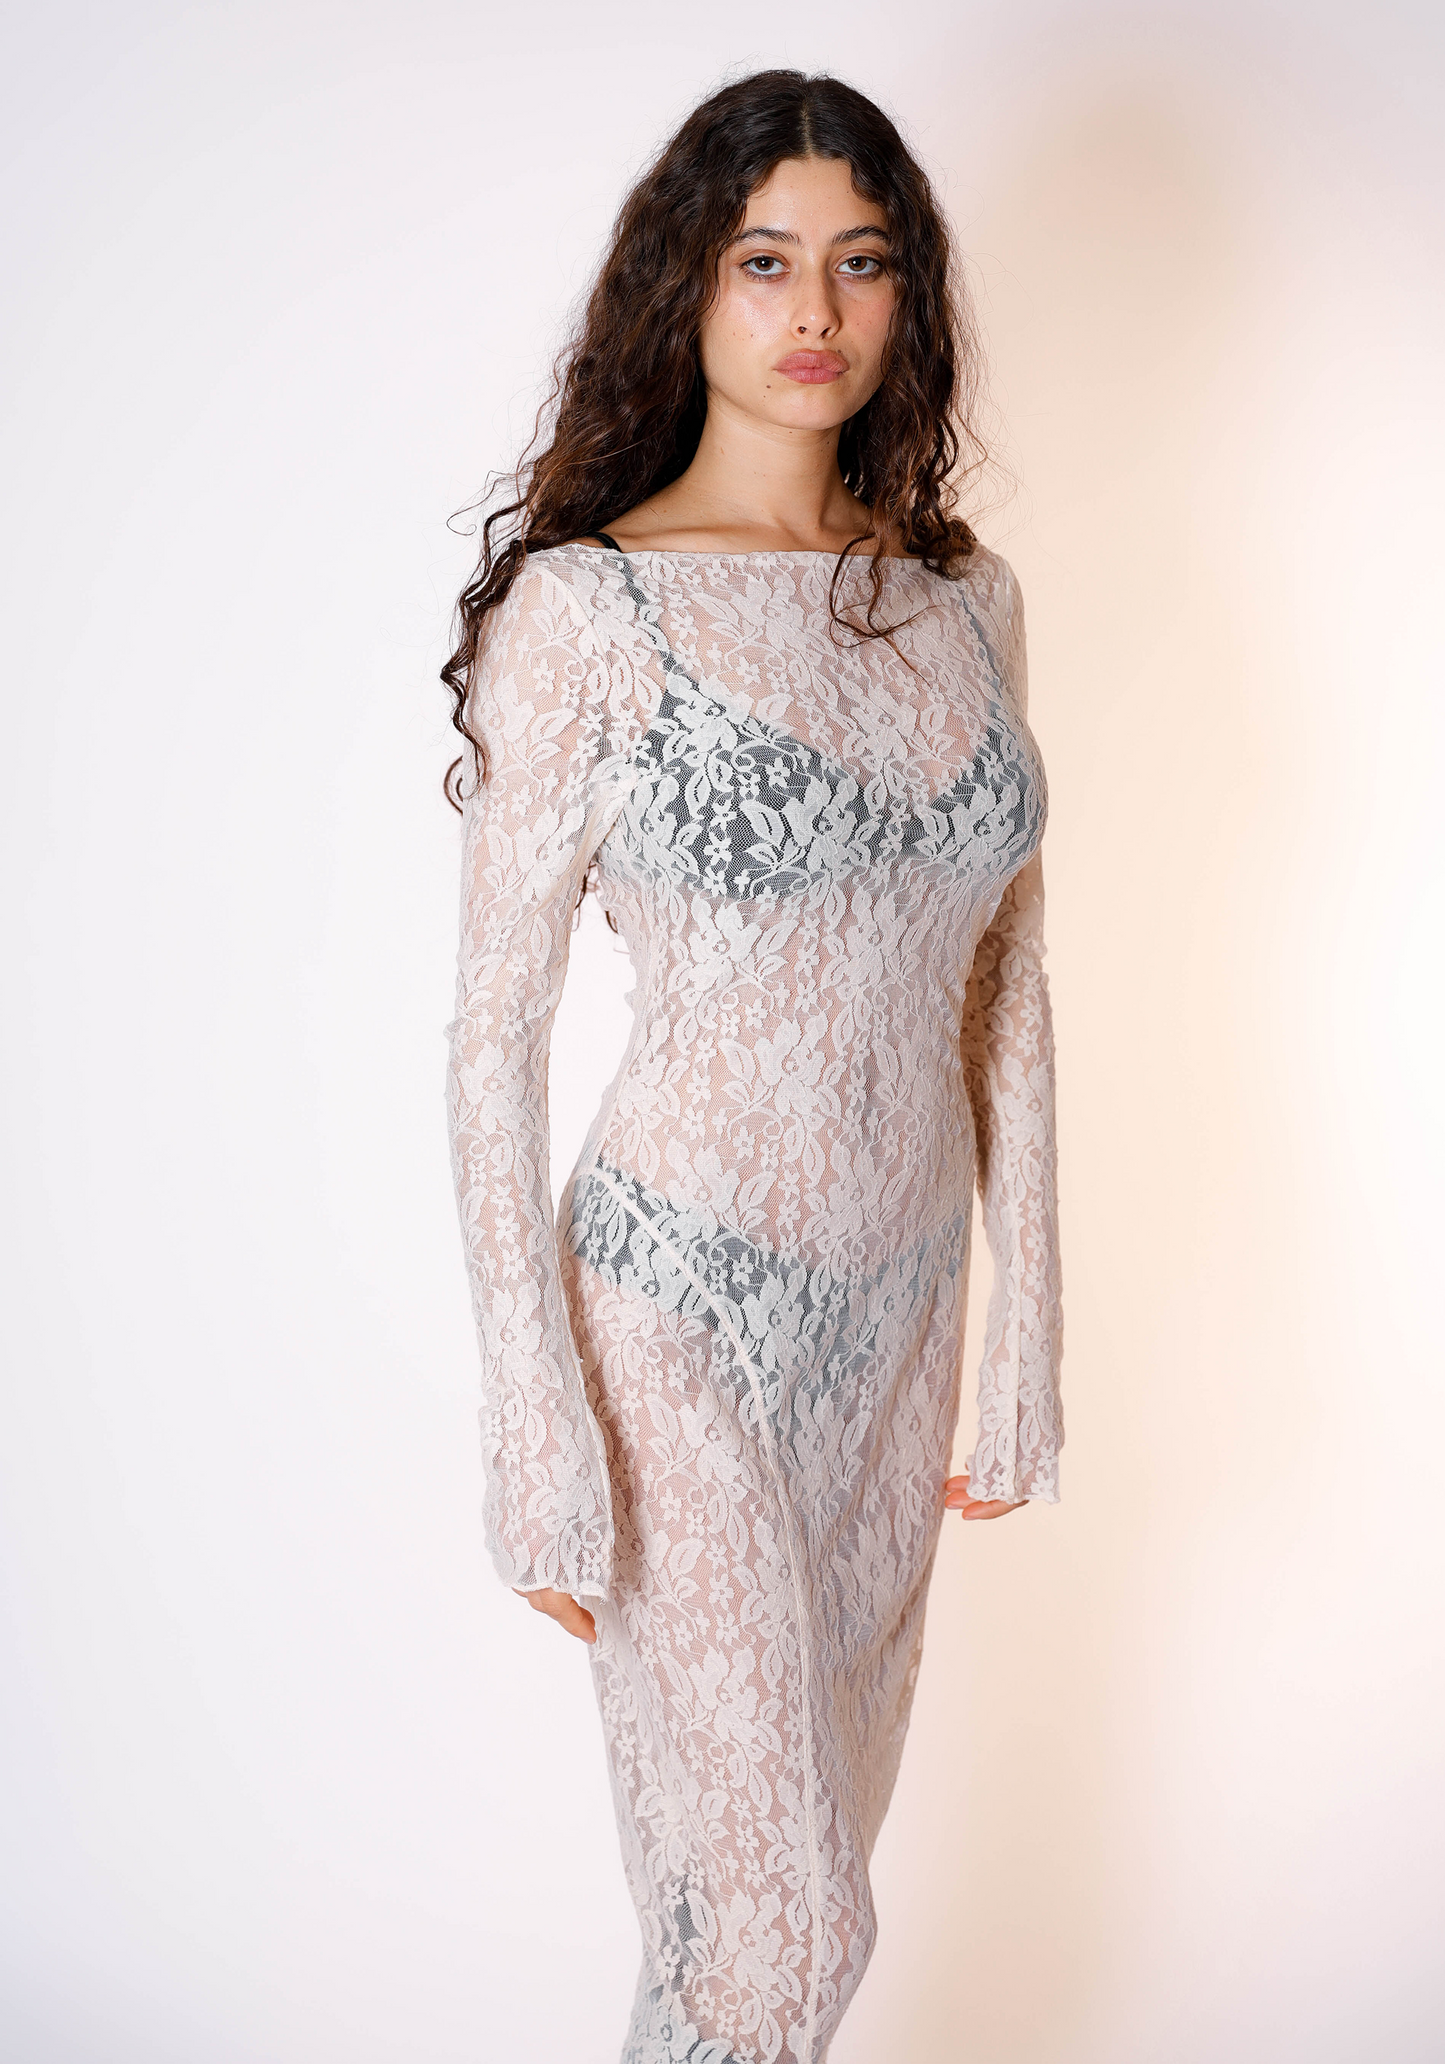 Demeter Long Sleeve Dress in Sandstone Lace